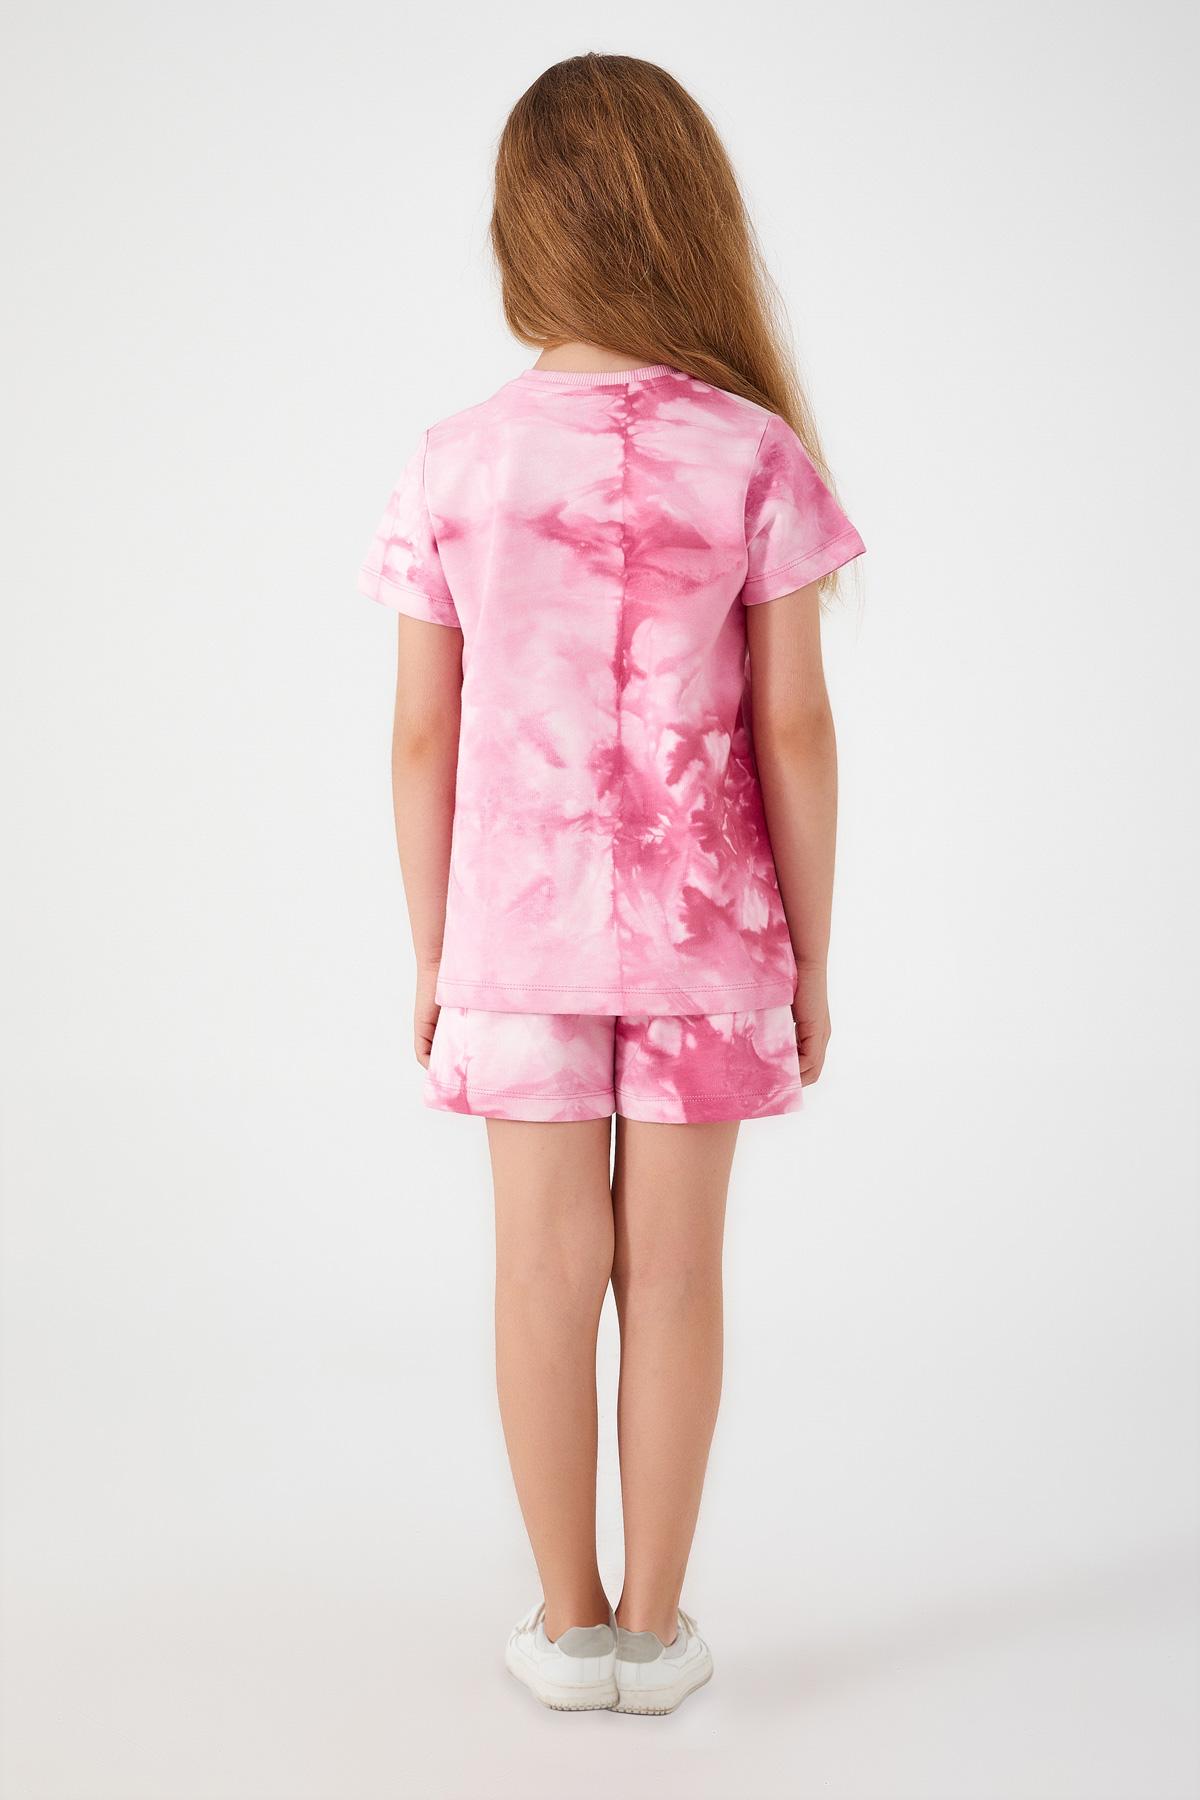 Selected image for U.S. POLO ASSN. Komplet šorc i majica za devojčice US1422-4 roze